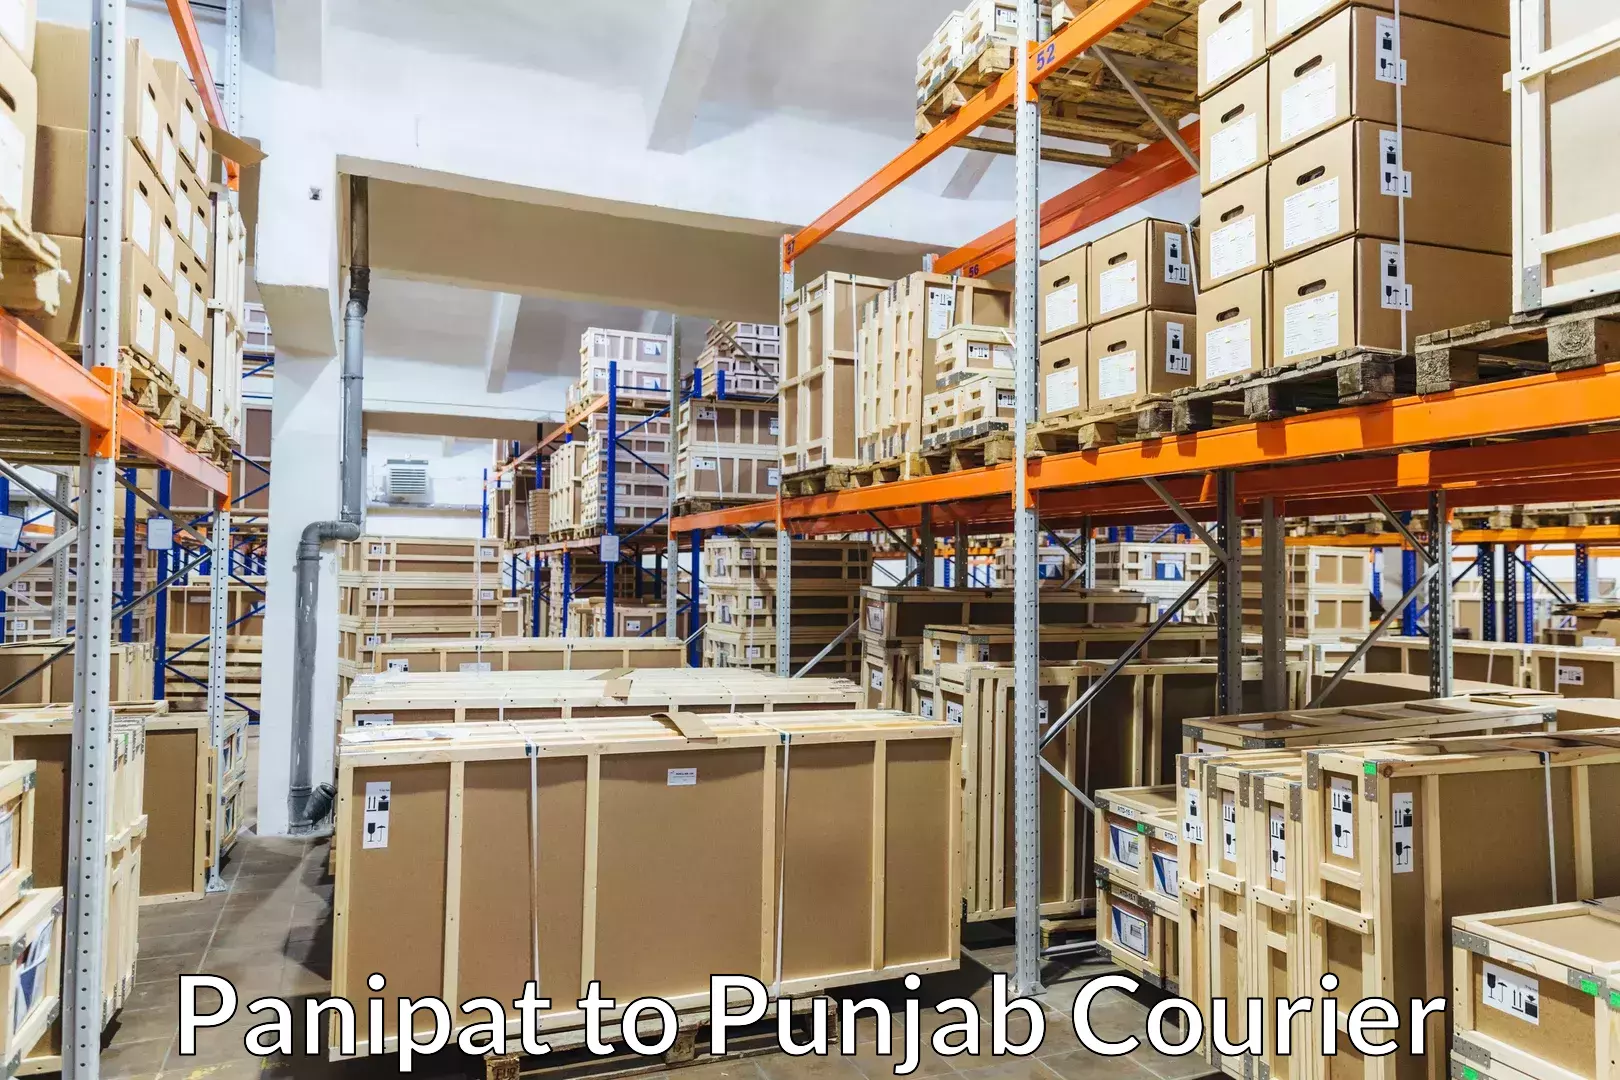 Baggage shipping experts Panipat to Punjab